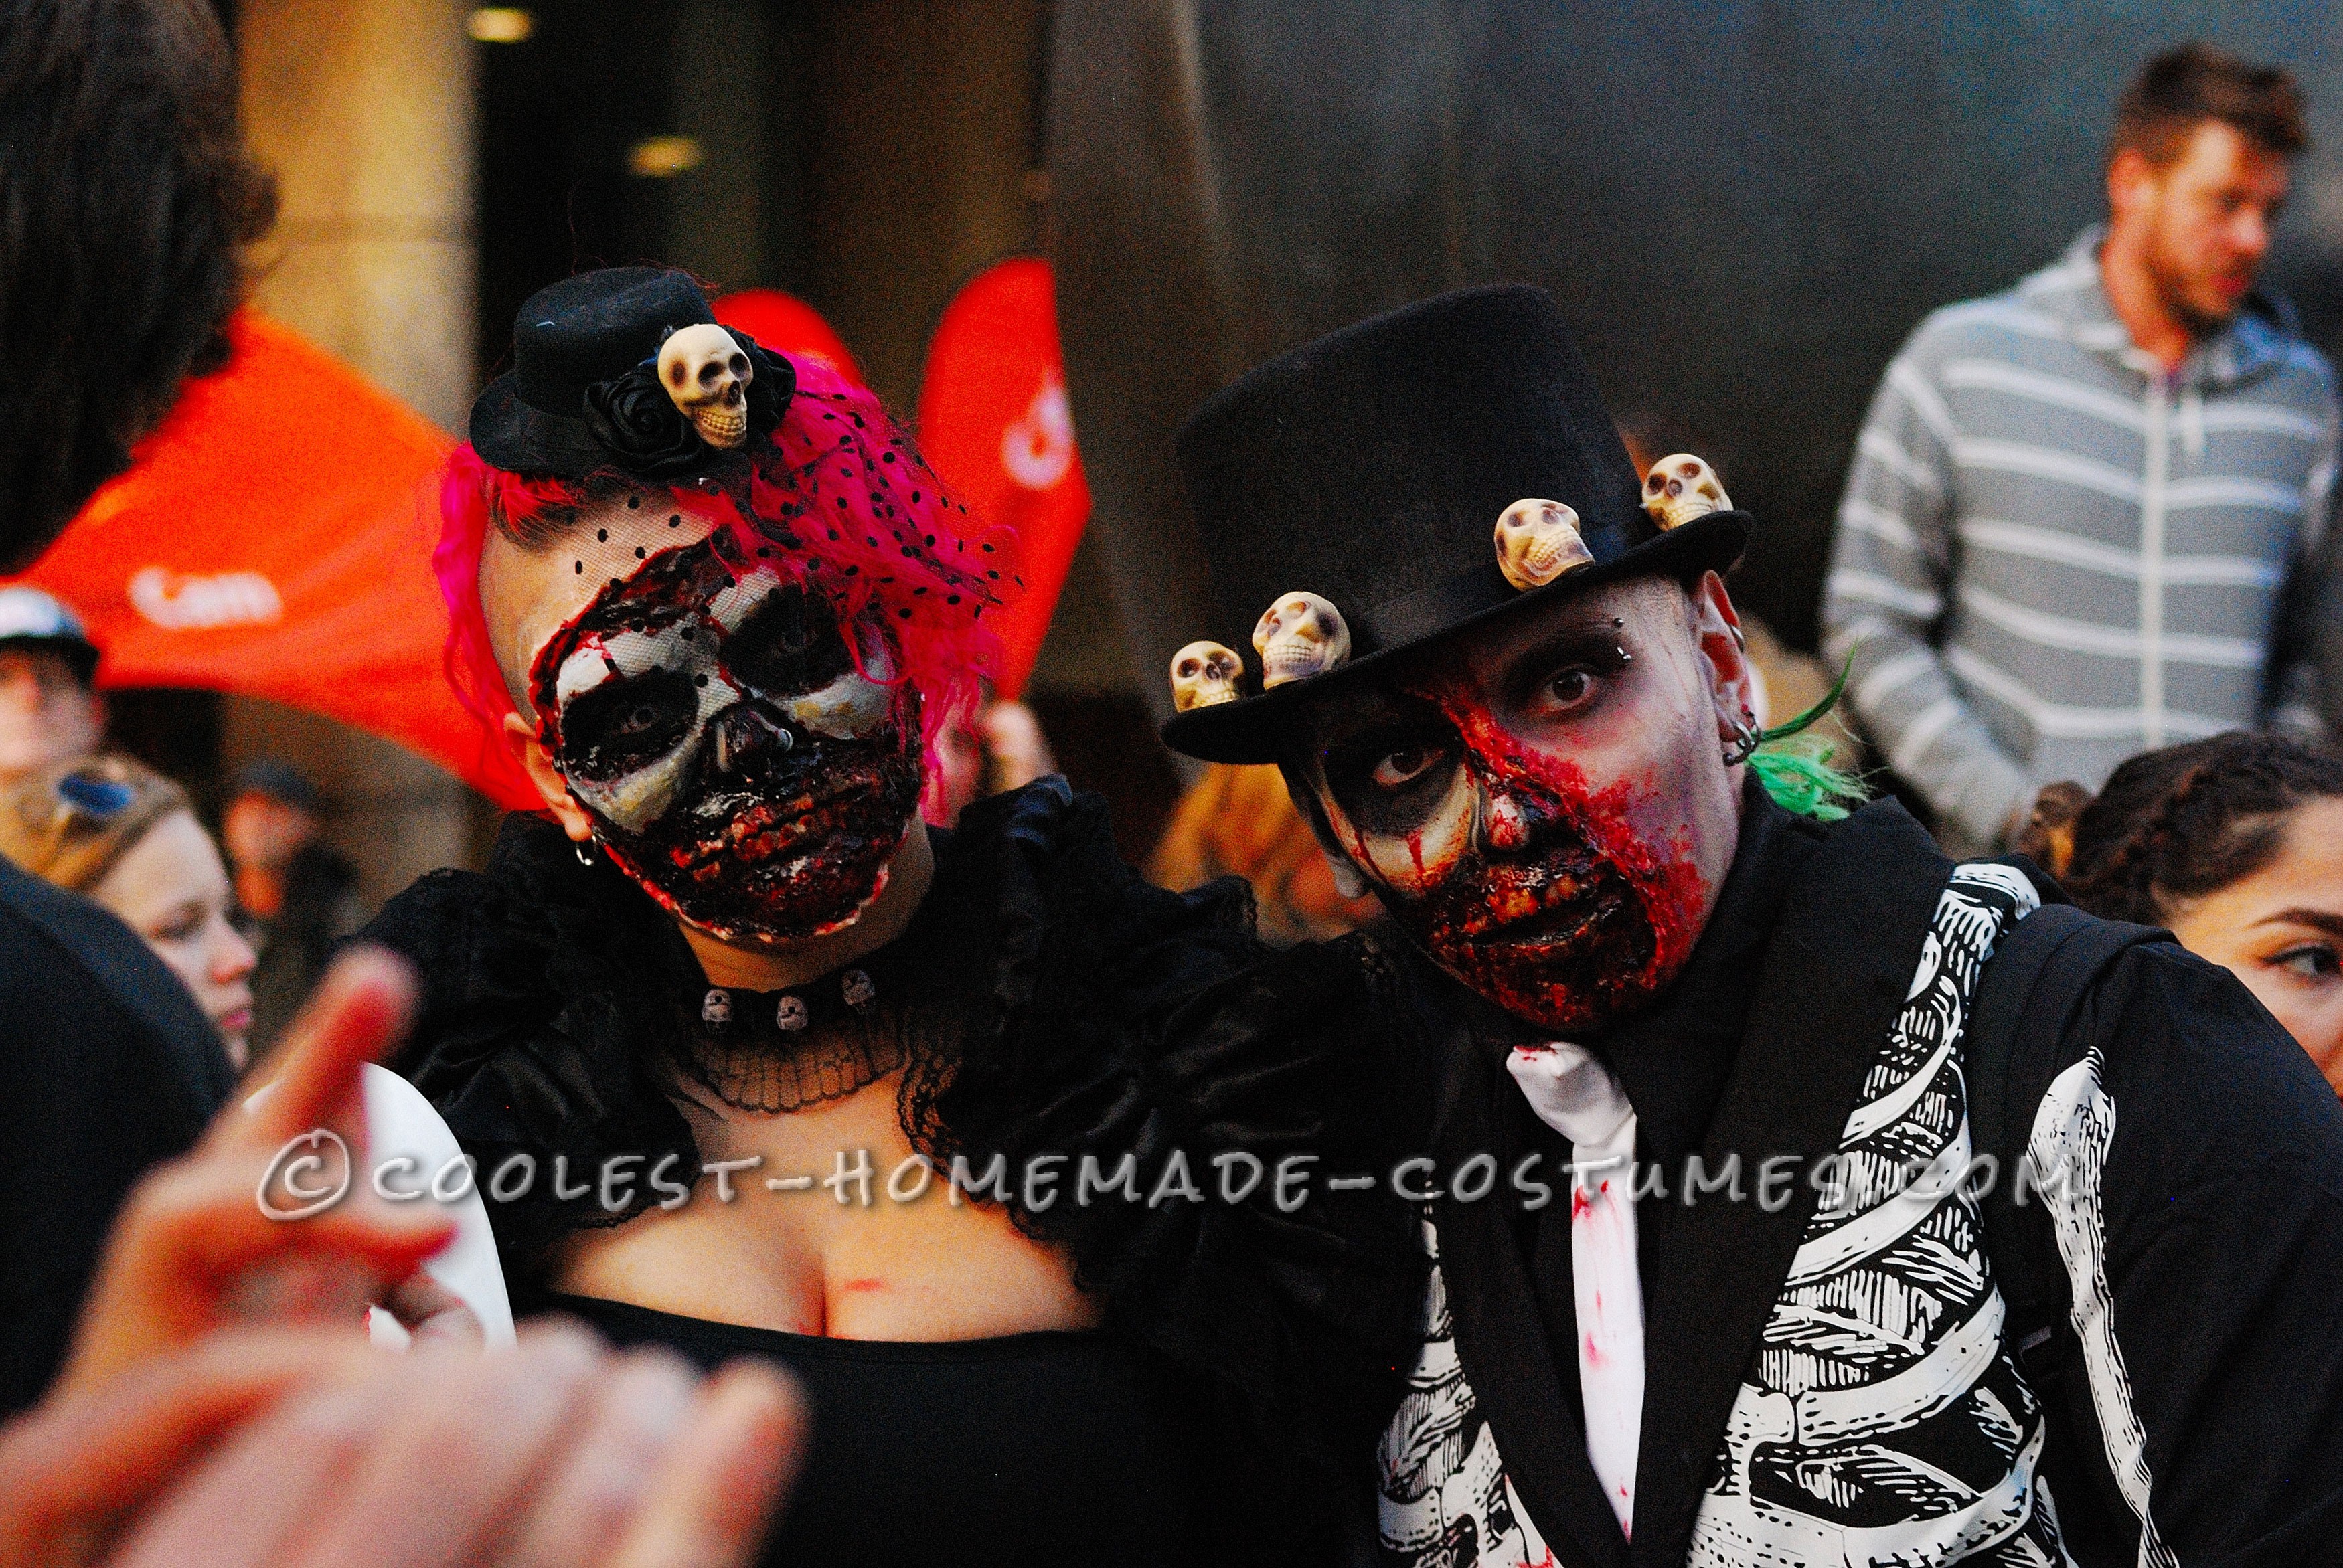 Dead Masquerade Zombie Couple Costume